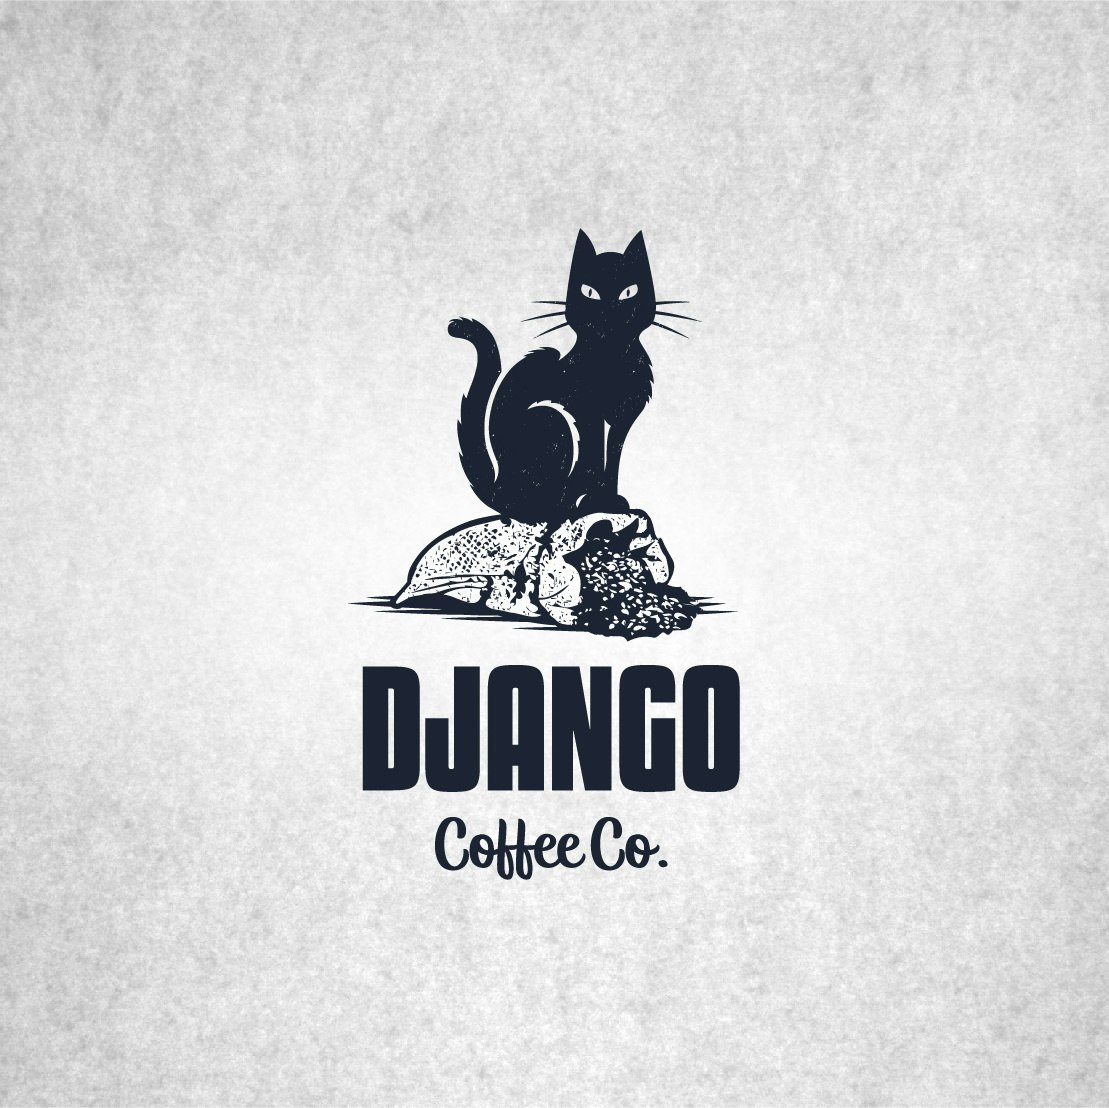 Diseño del logo del café de Django